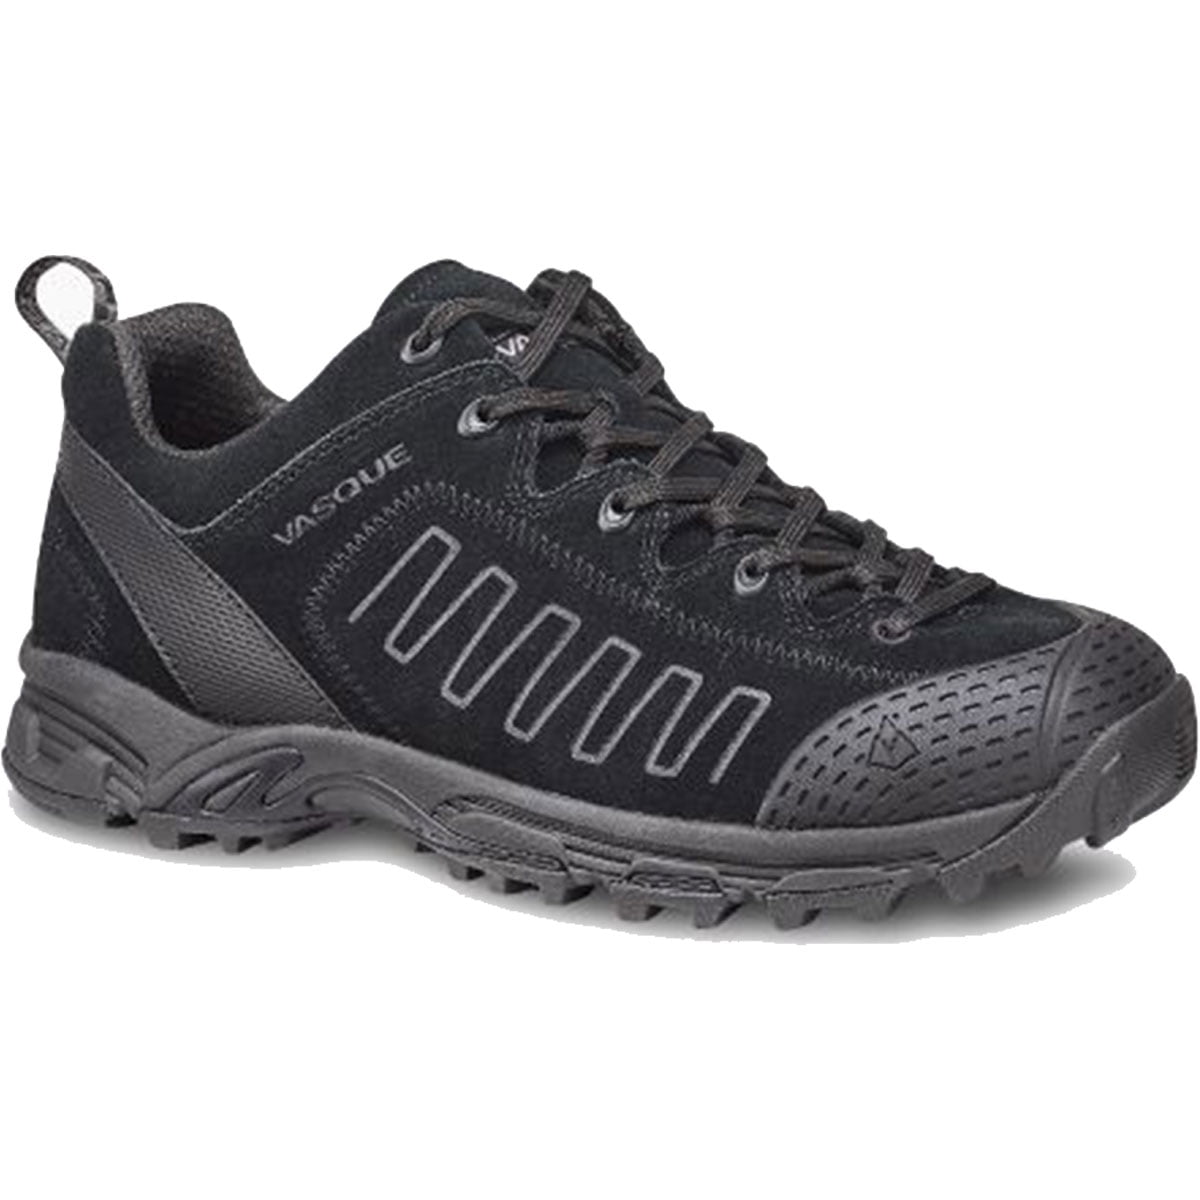 Vasque Vasque Juxt Hiking Shoes for Men - Walmart.com